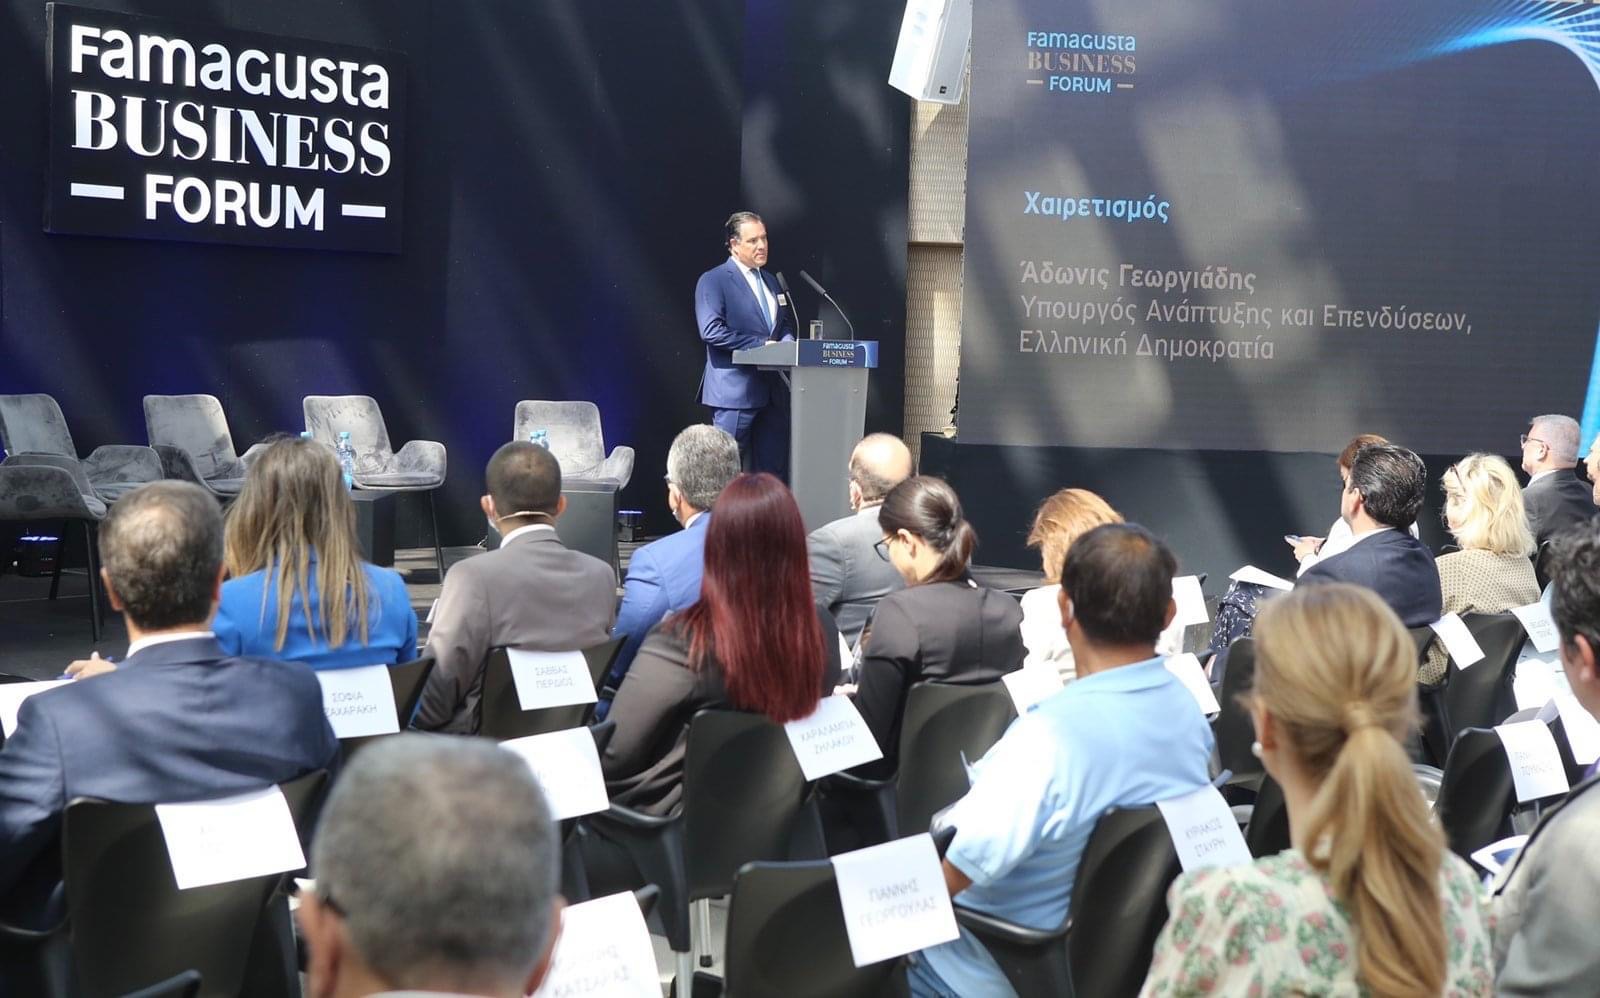 Η Οικονομία, η Ναυτιλία και ο Τουρισμός στο Famagusta Business Forum